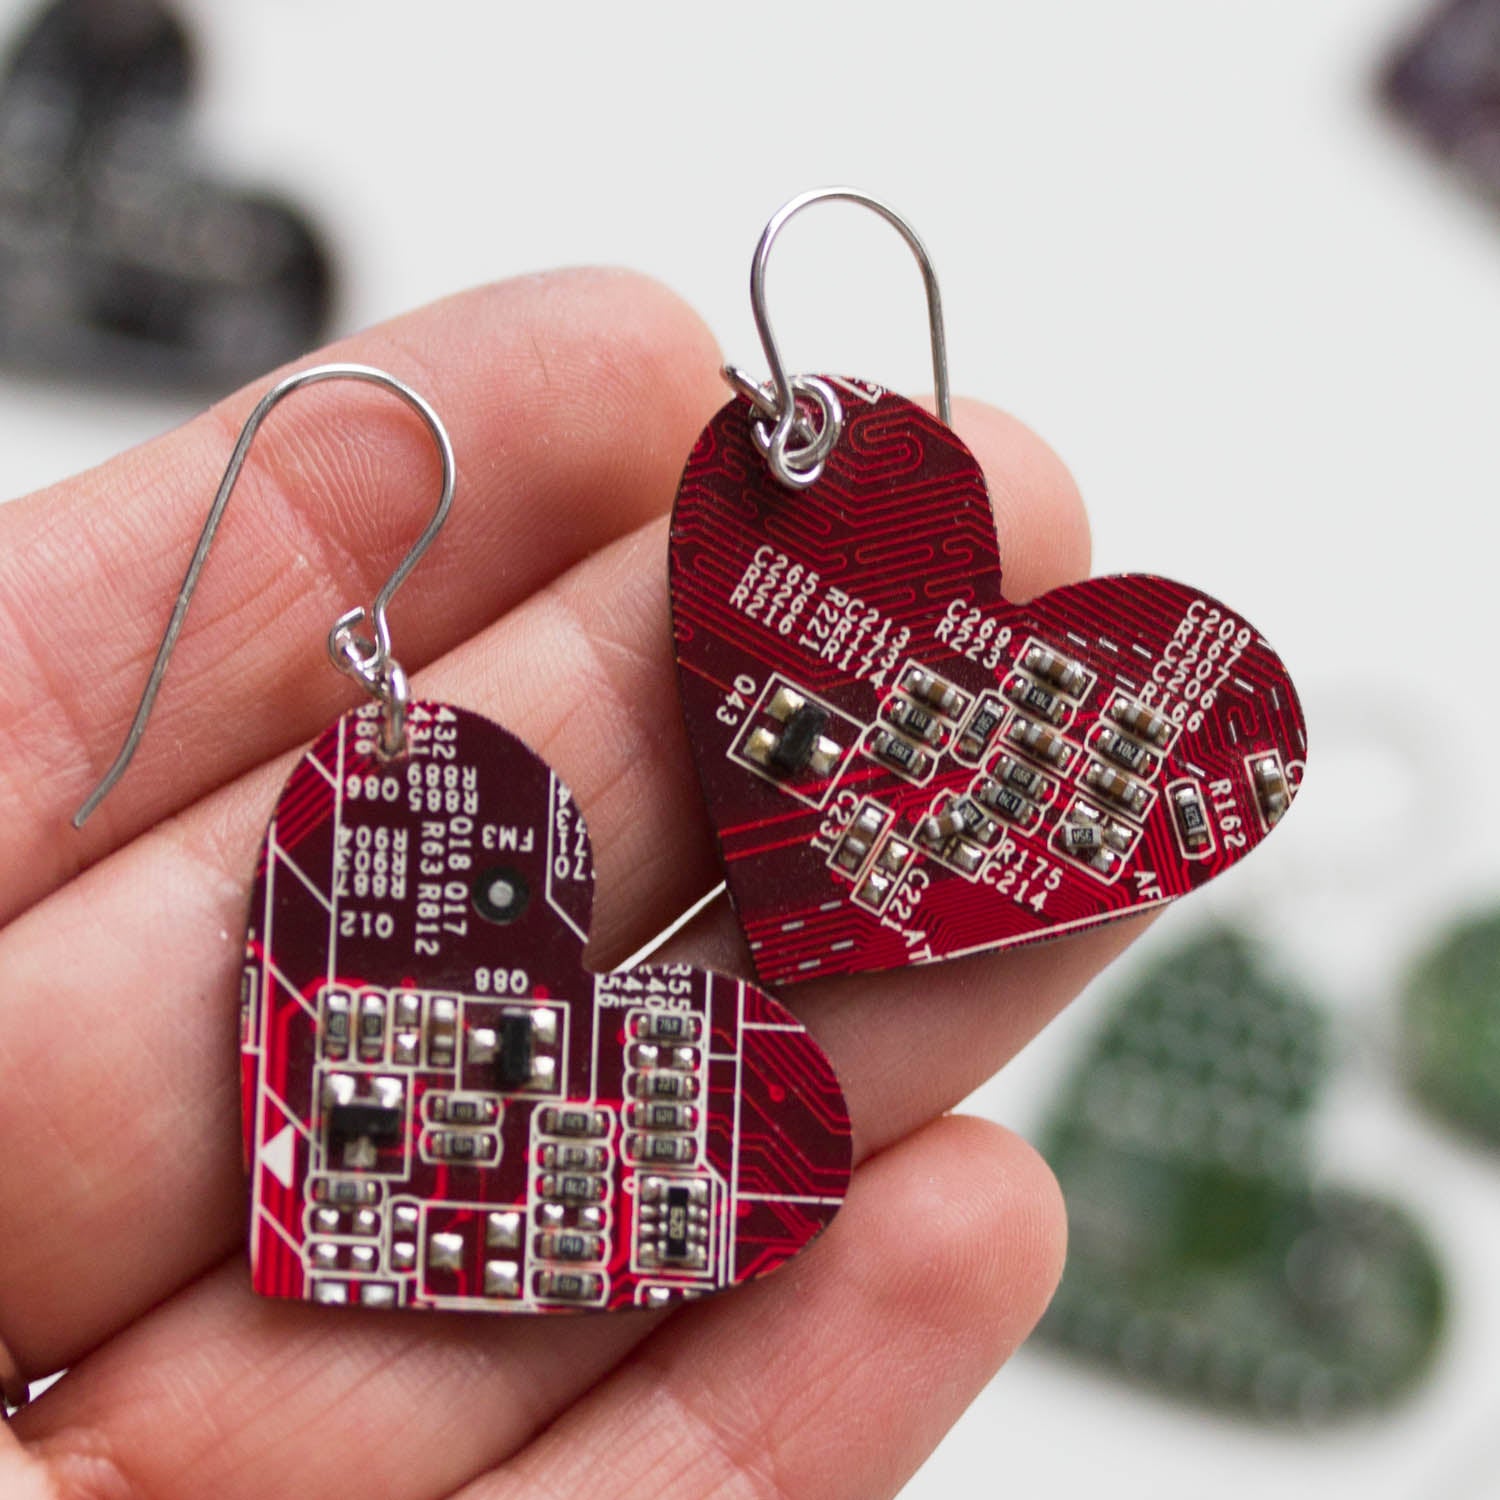 Big circuit board heart earrings